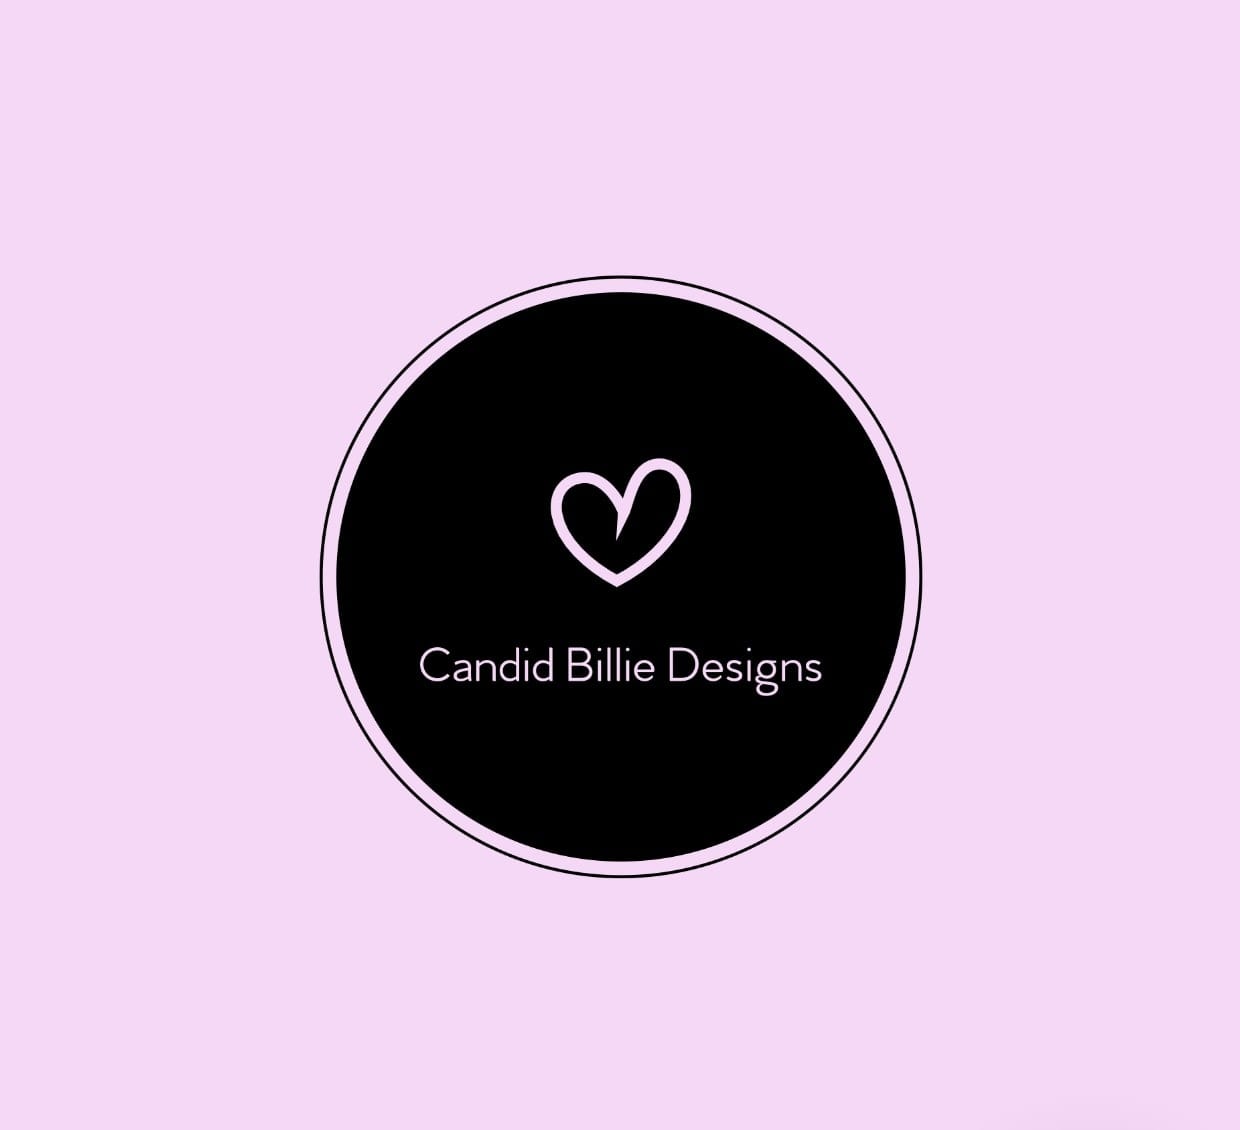 Candid Billie Designs